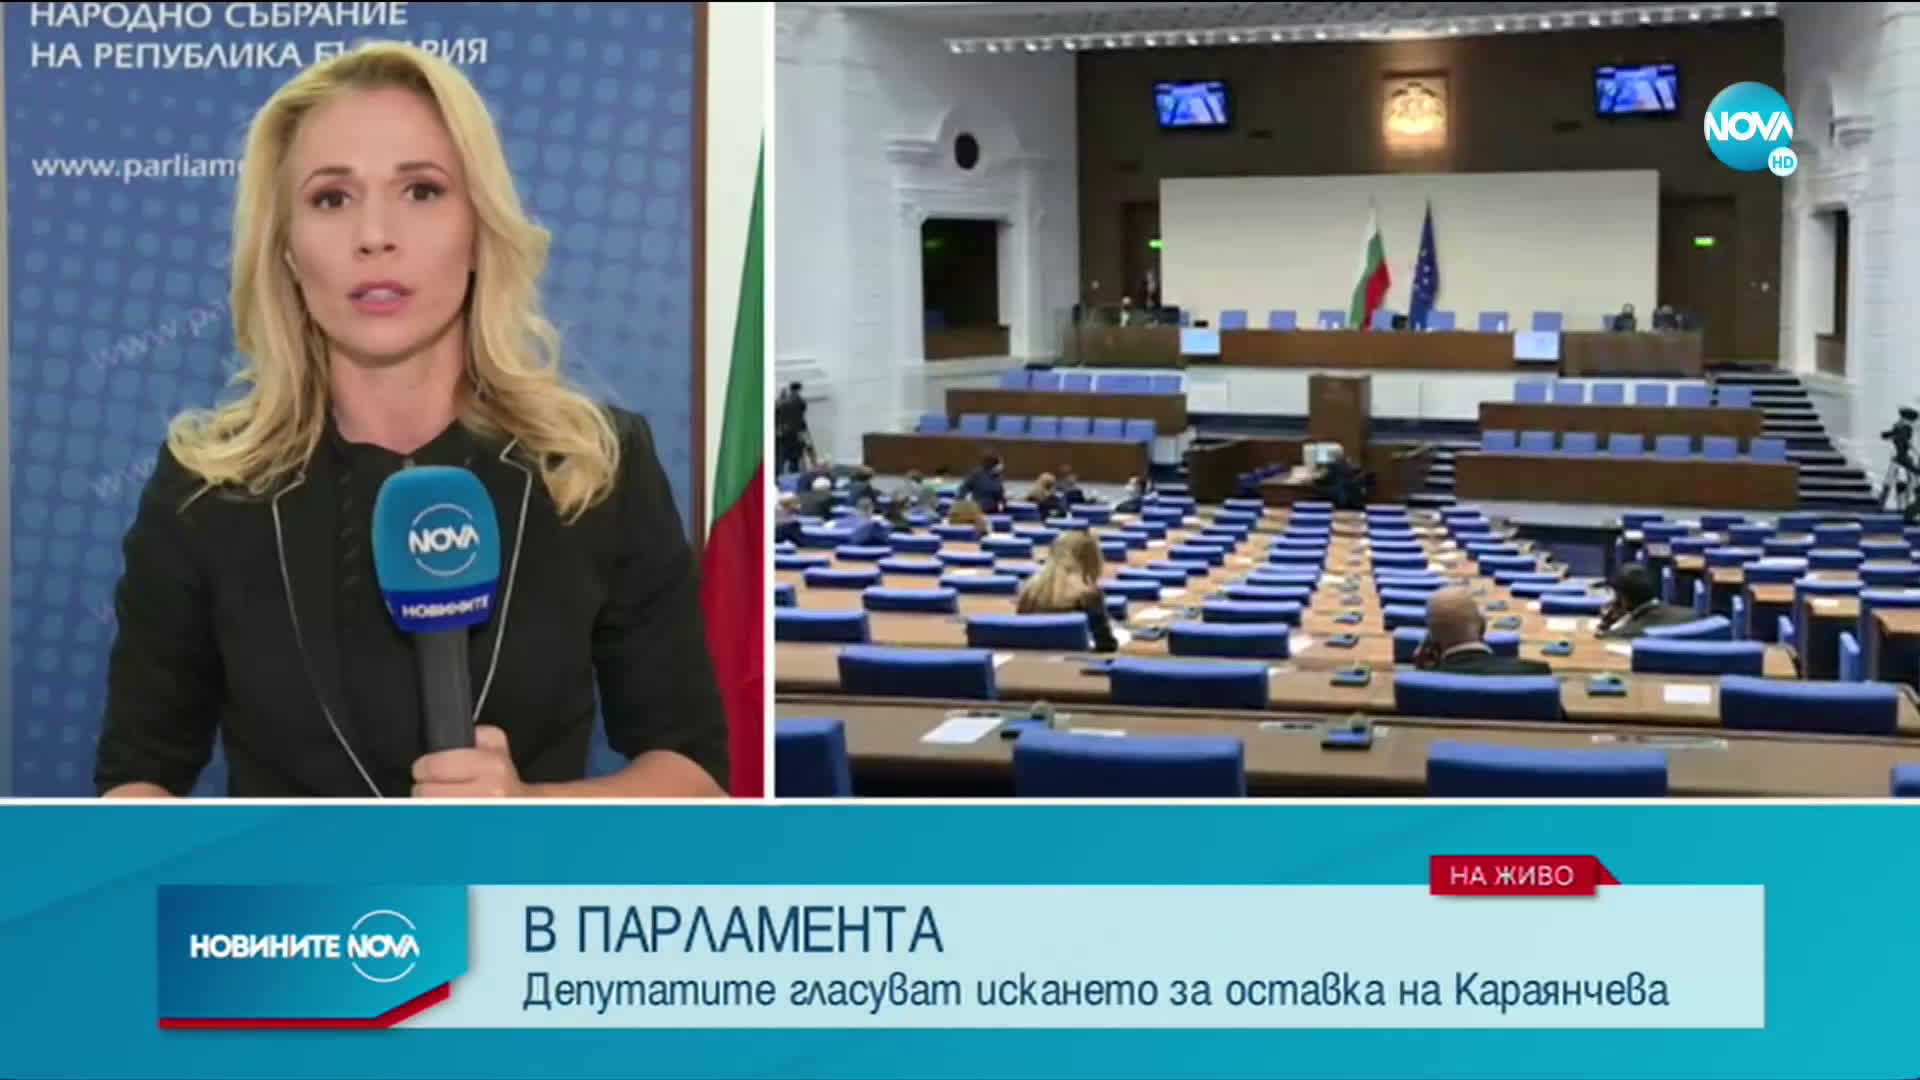 Парламентът ще обсъди искането за оставка на Караянчева